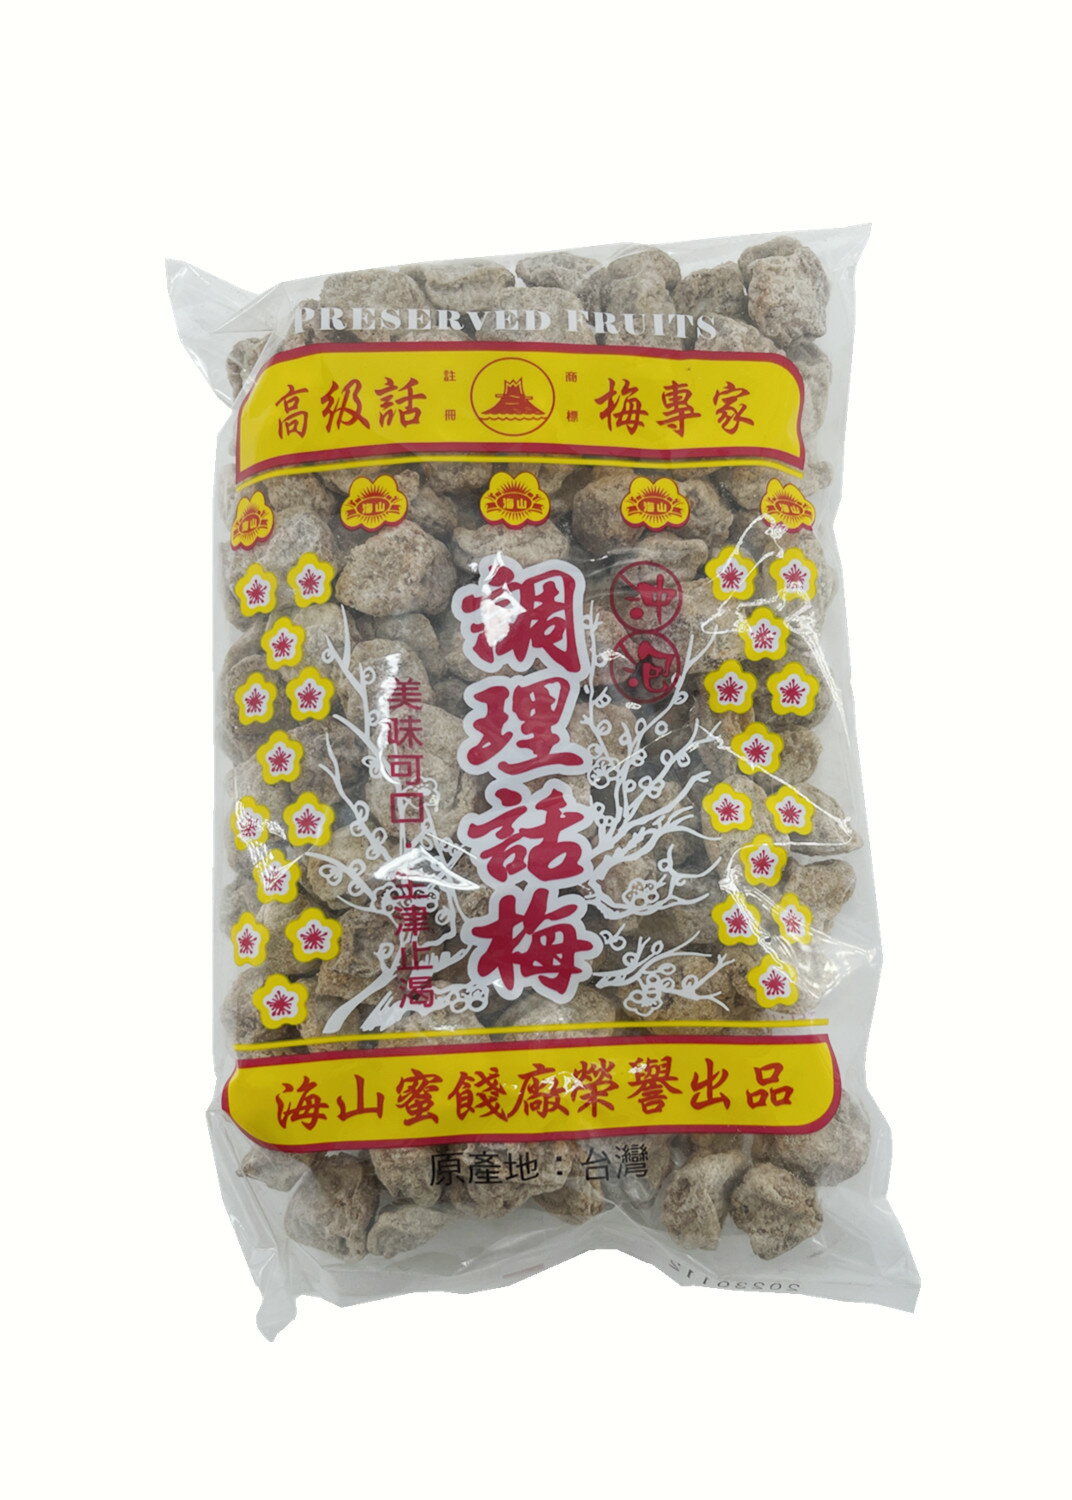 海山牌-調理話梅(500g)紅.白2種梅子粒沖泡飲料梅子綠茶經濟包上庄話梅